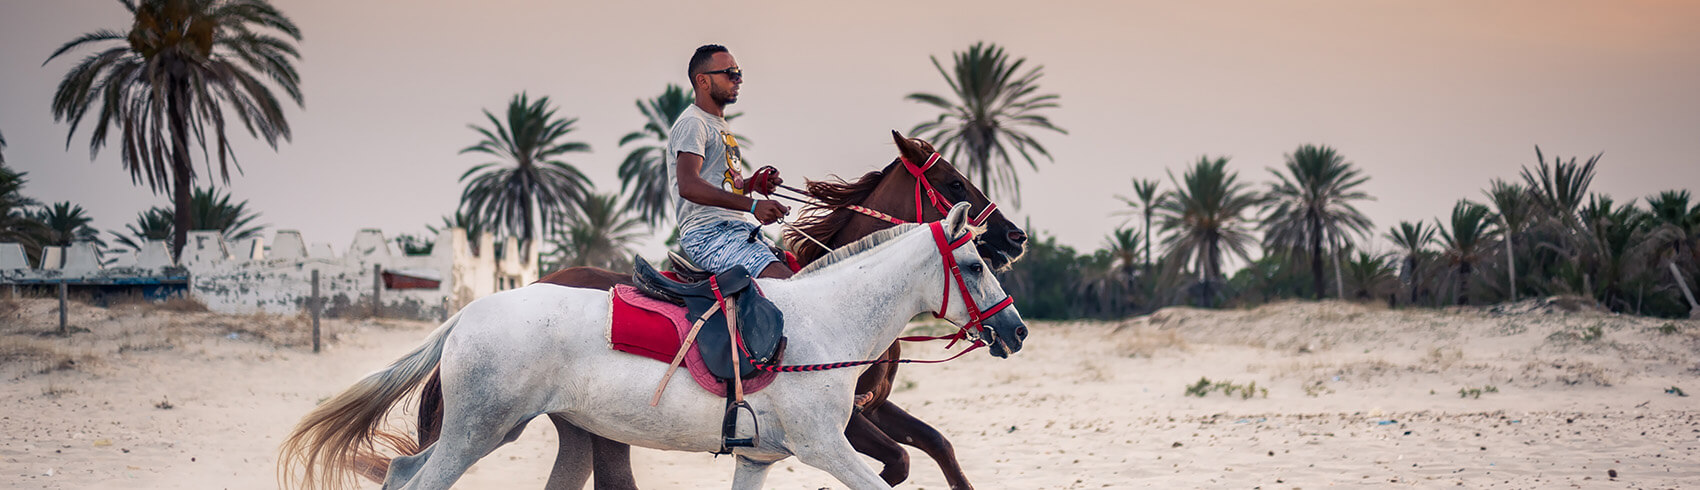 Bahrain horse riding